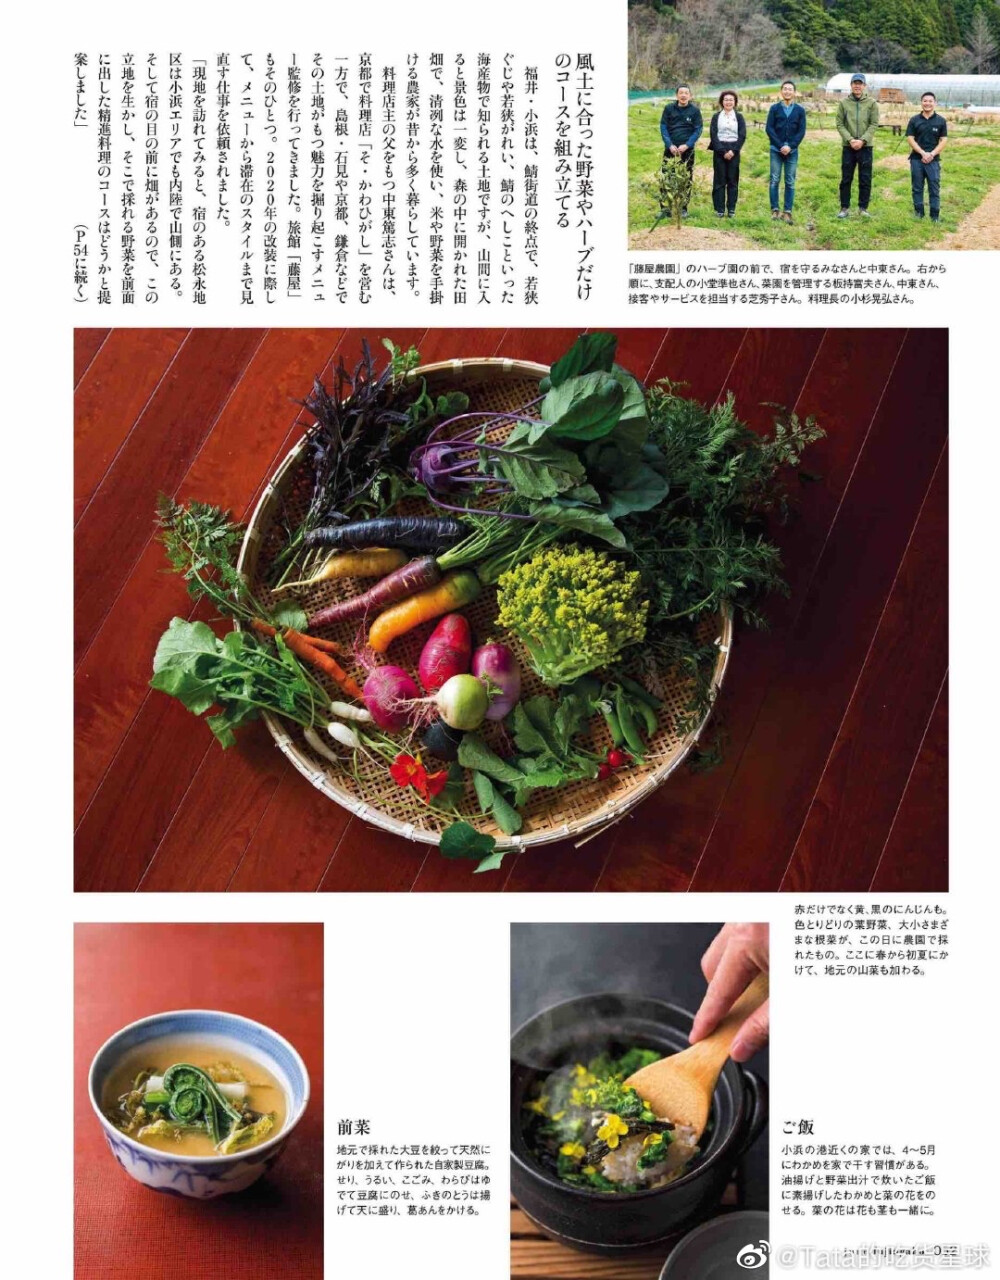 蔬菜料理的力量。日式摆盘的确值得一学。
from 杂志《妇人画报》 ​​​